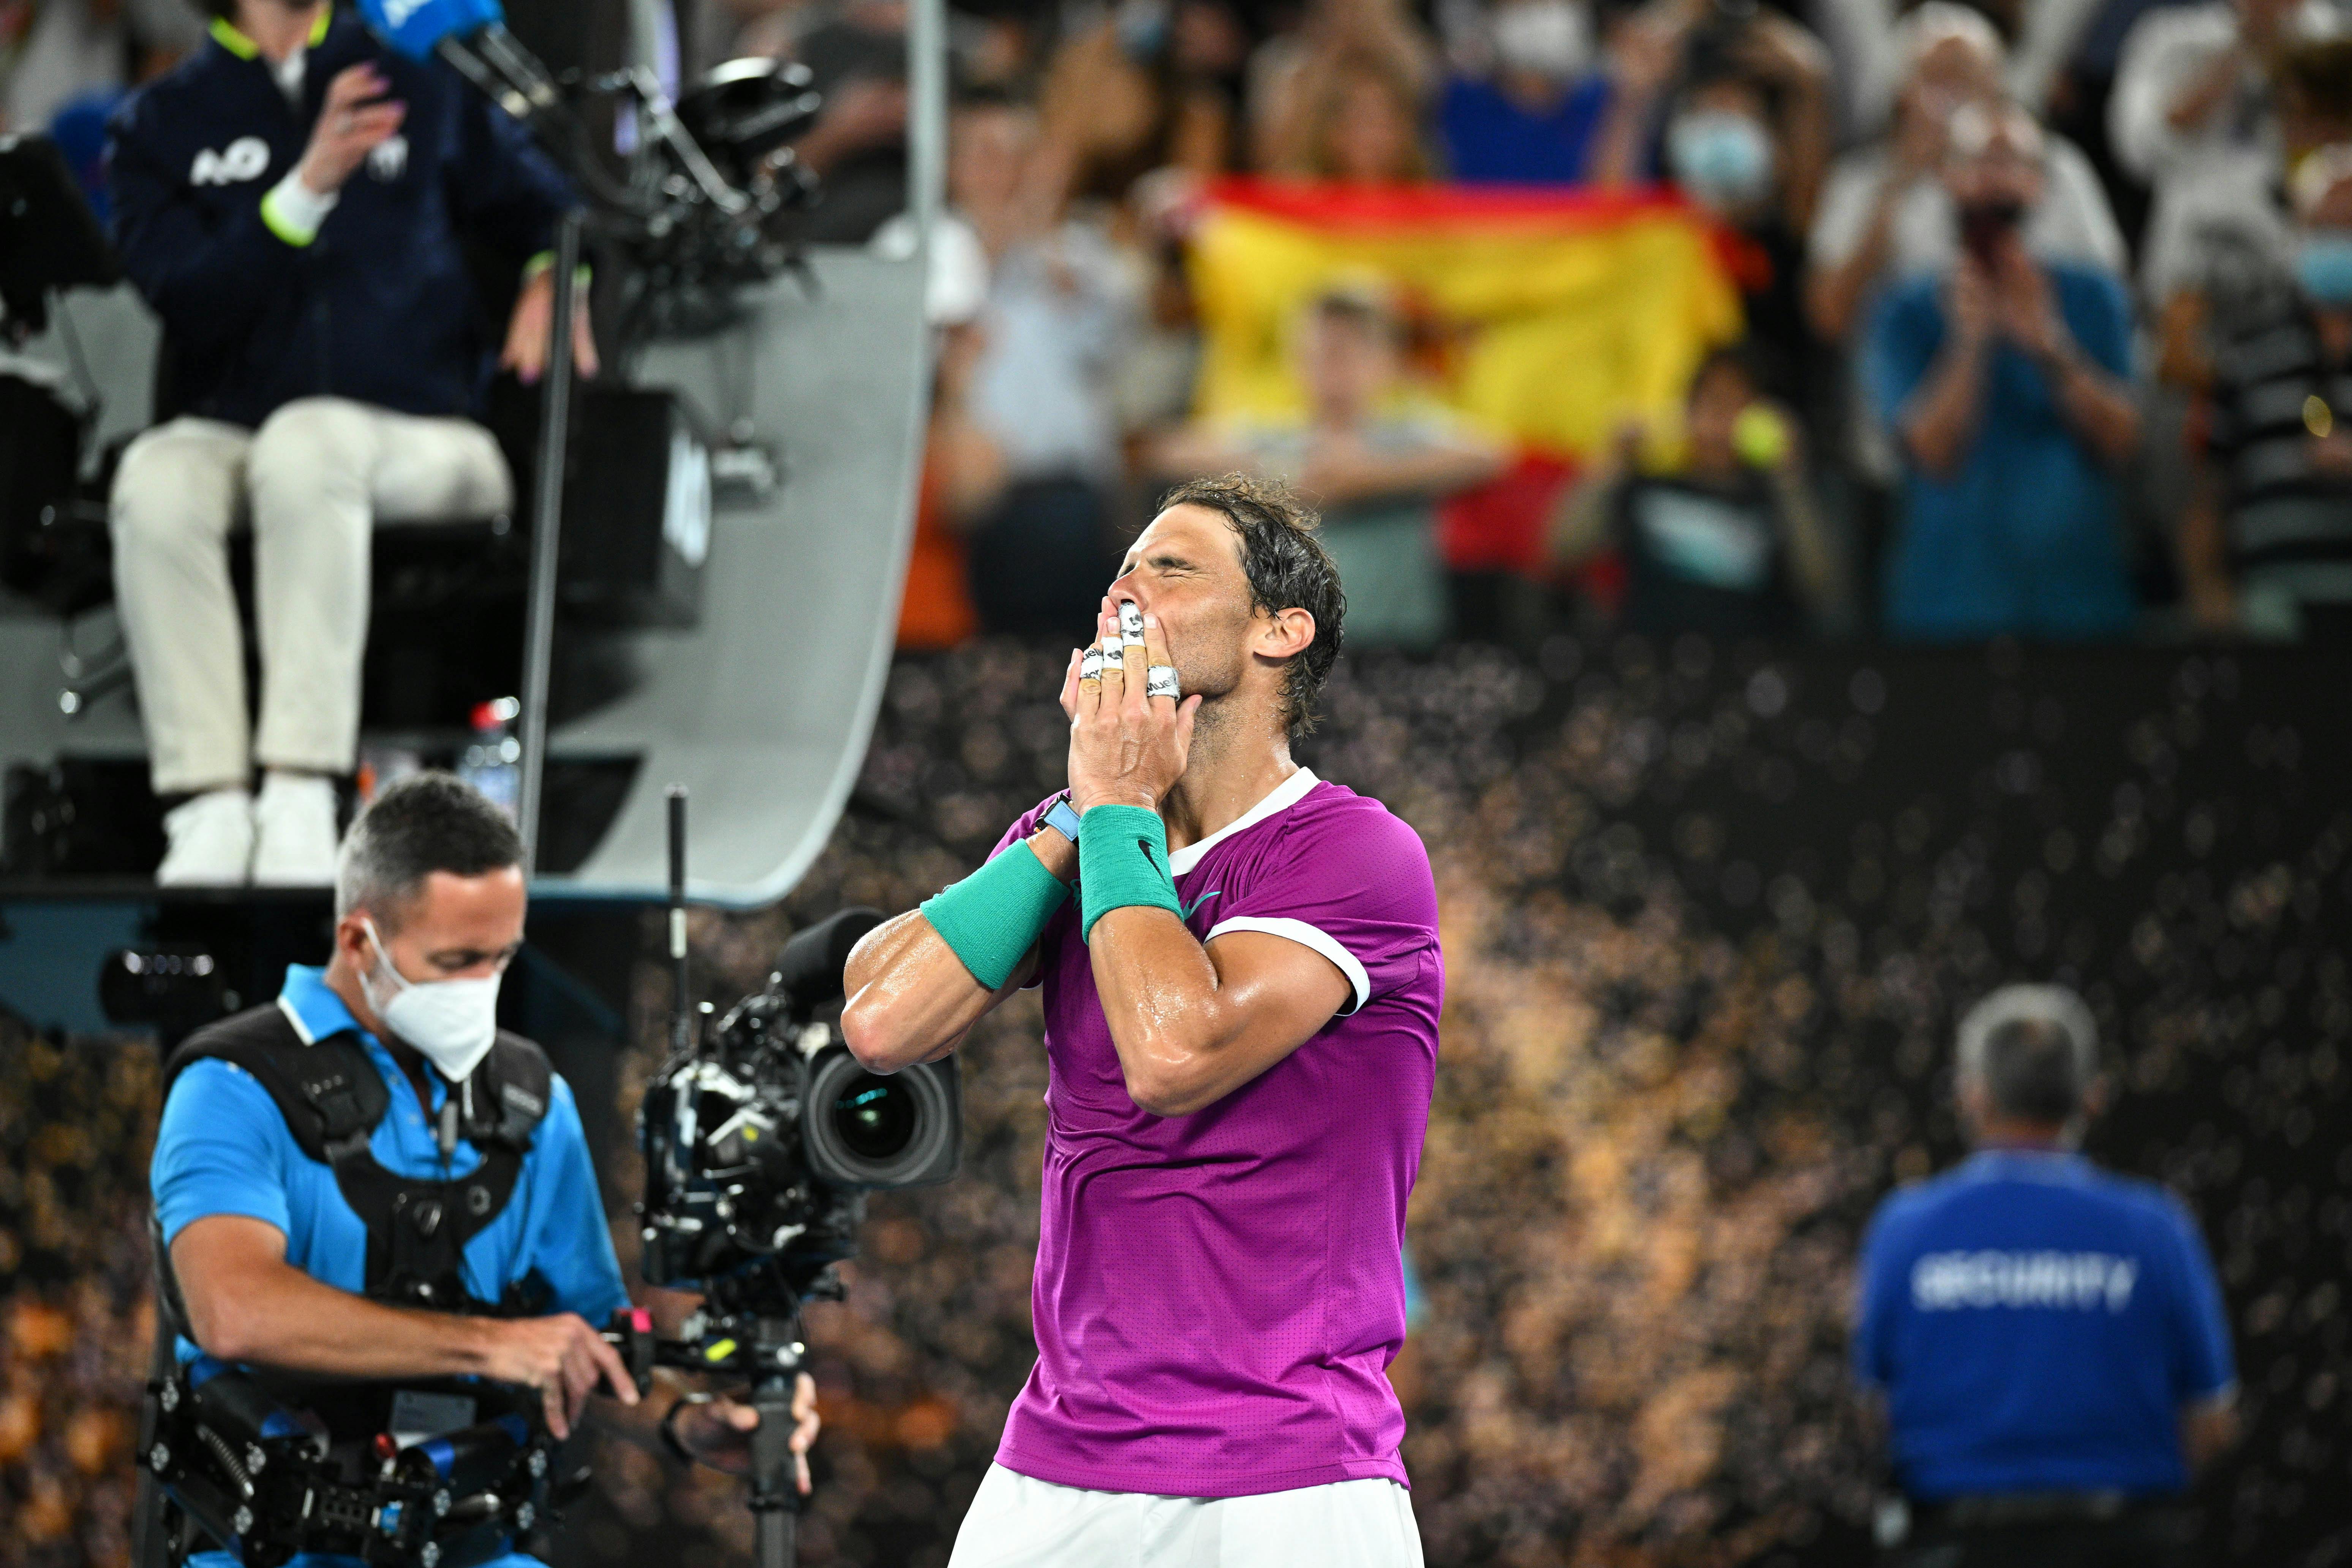 Rafael Nadal / Demi-finale Open d'Australie 2022